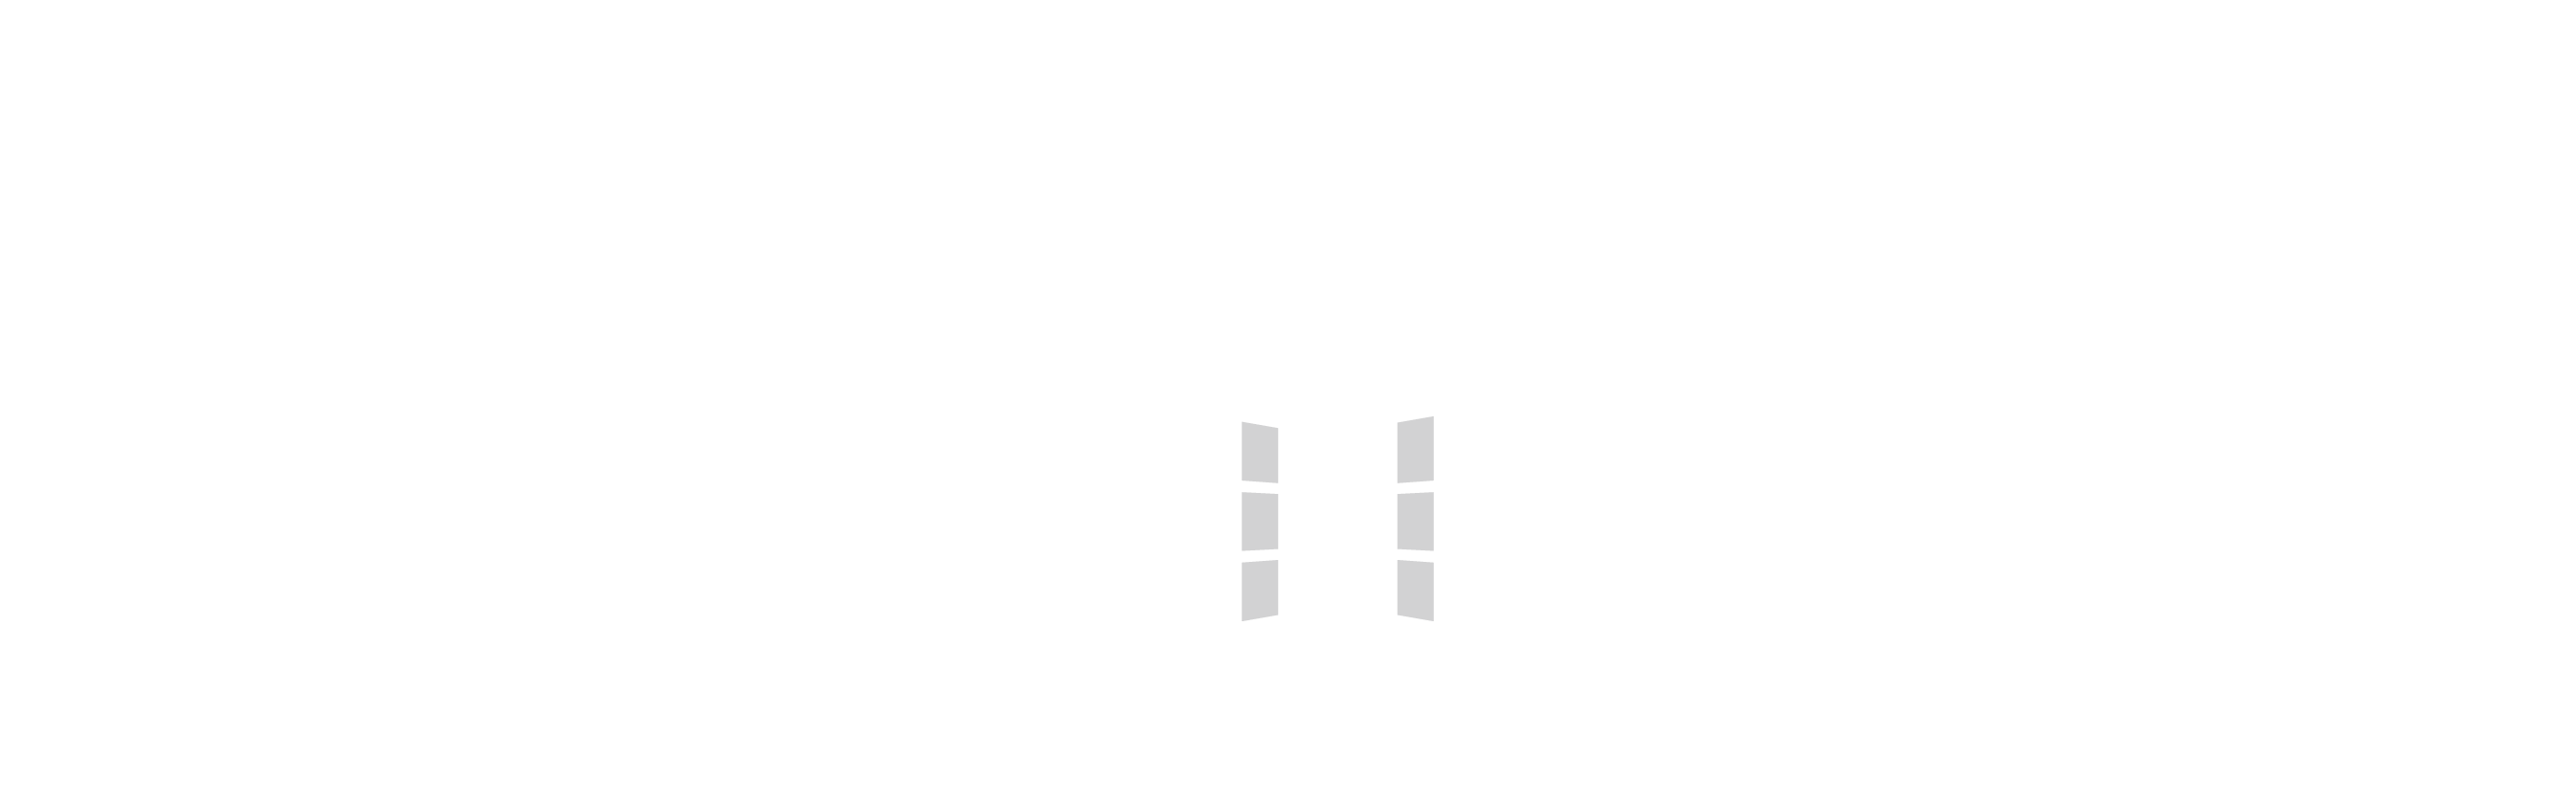 Colegio Maria Auxiliadora – Alicante